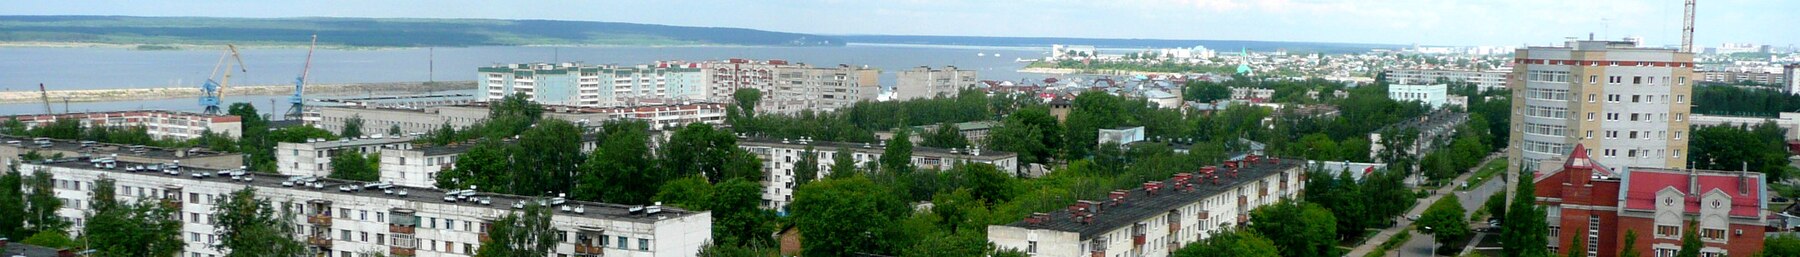 Naberezhnye Chelny banner View from Hotel Tatarstan.jpg